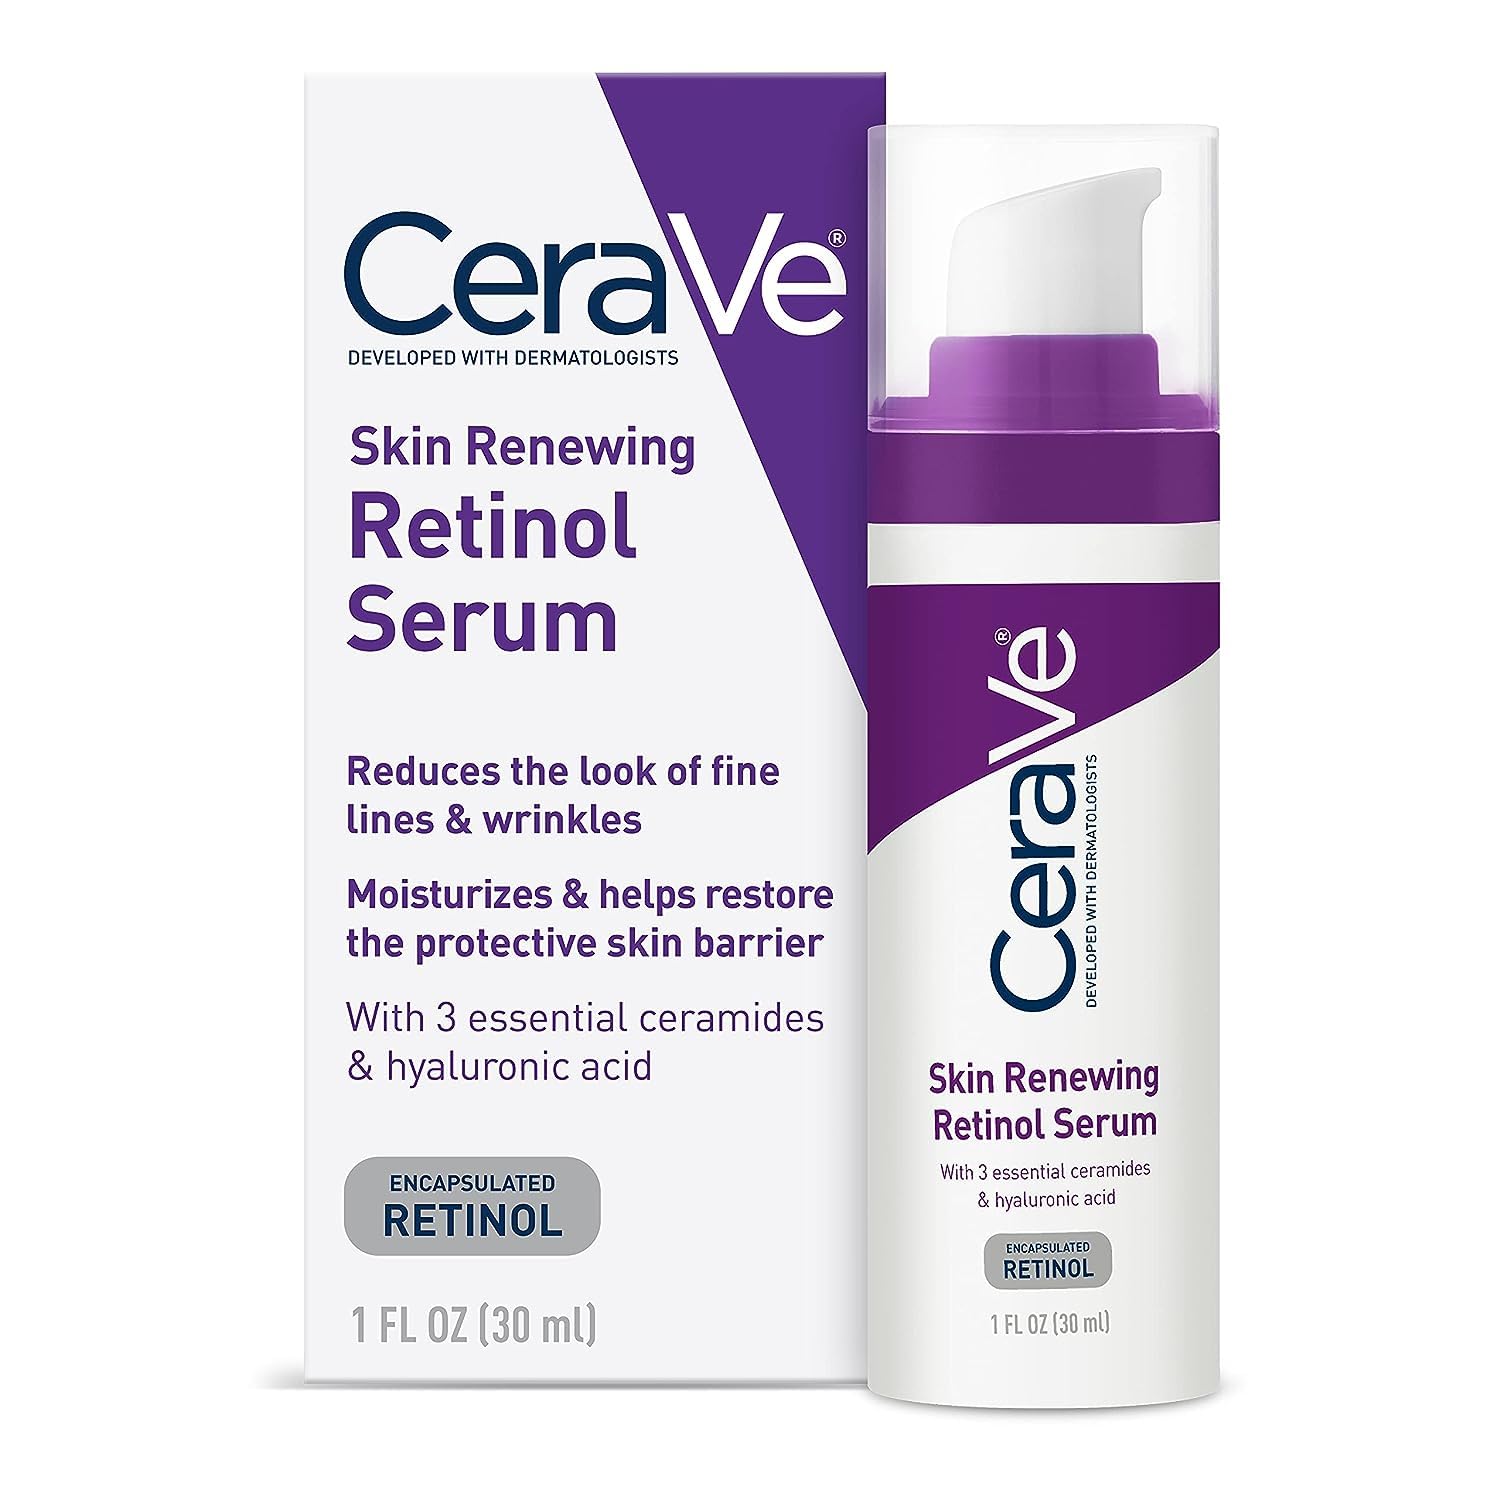 CeraVe Anti Aging Retinol Seru…